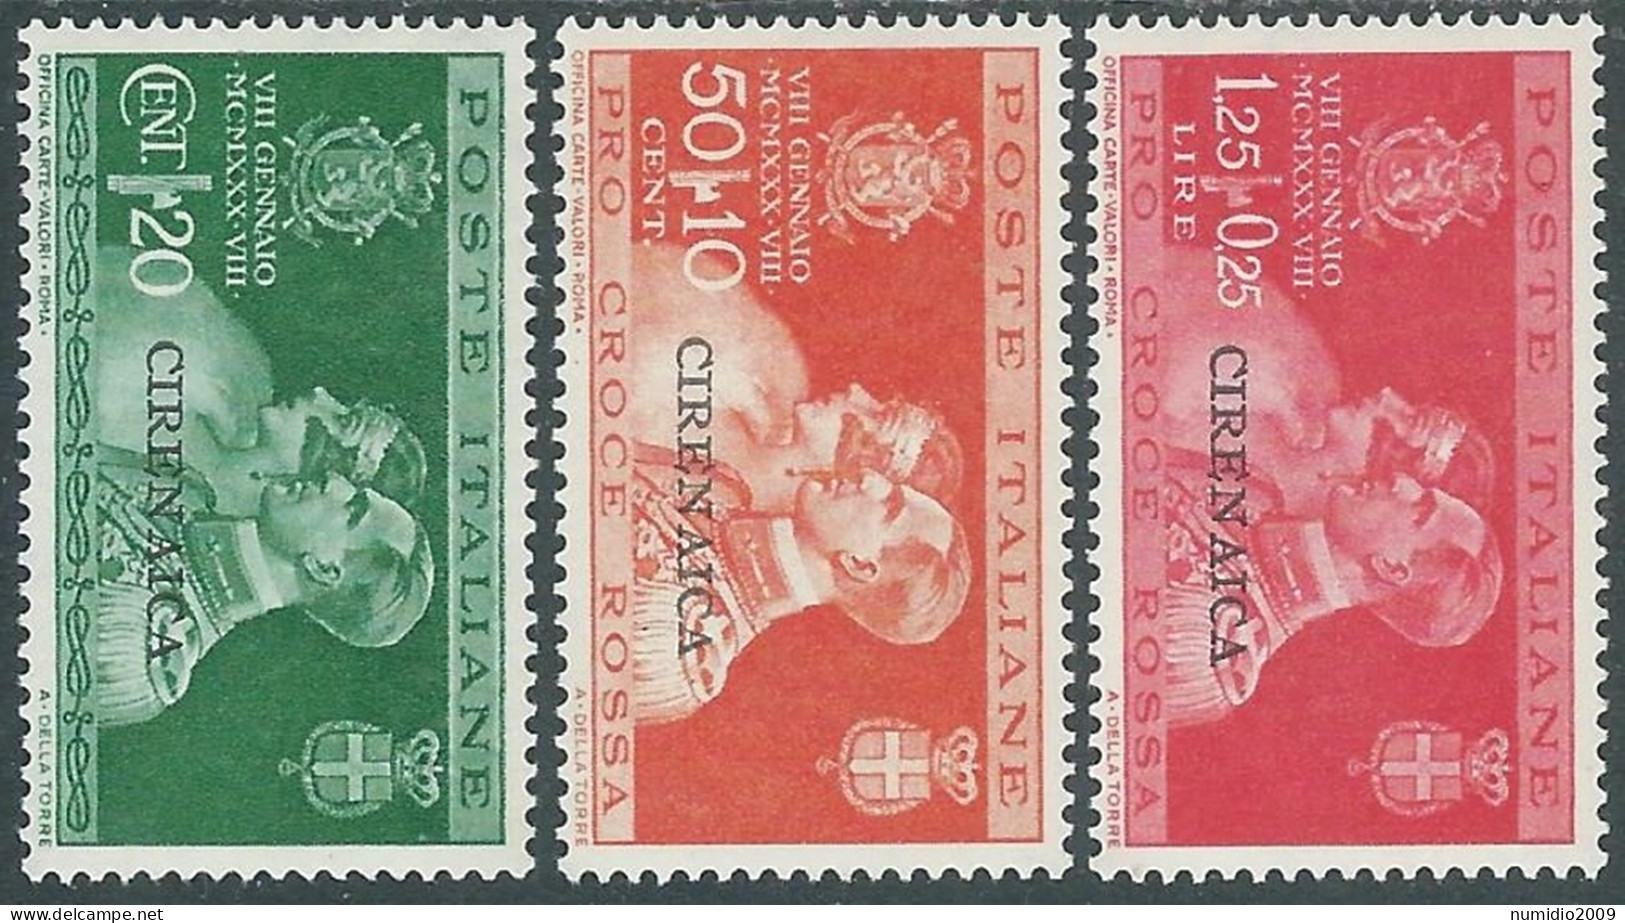 1930 CIRENAICA NOZZE 3 VALORI MH * - I41-8 - Cirenaica